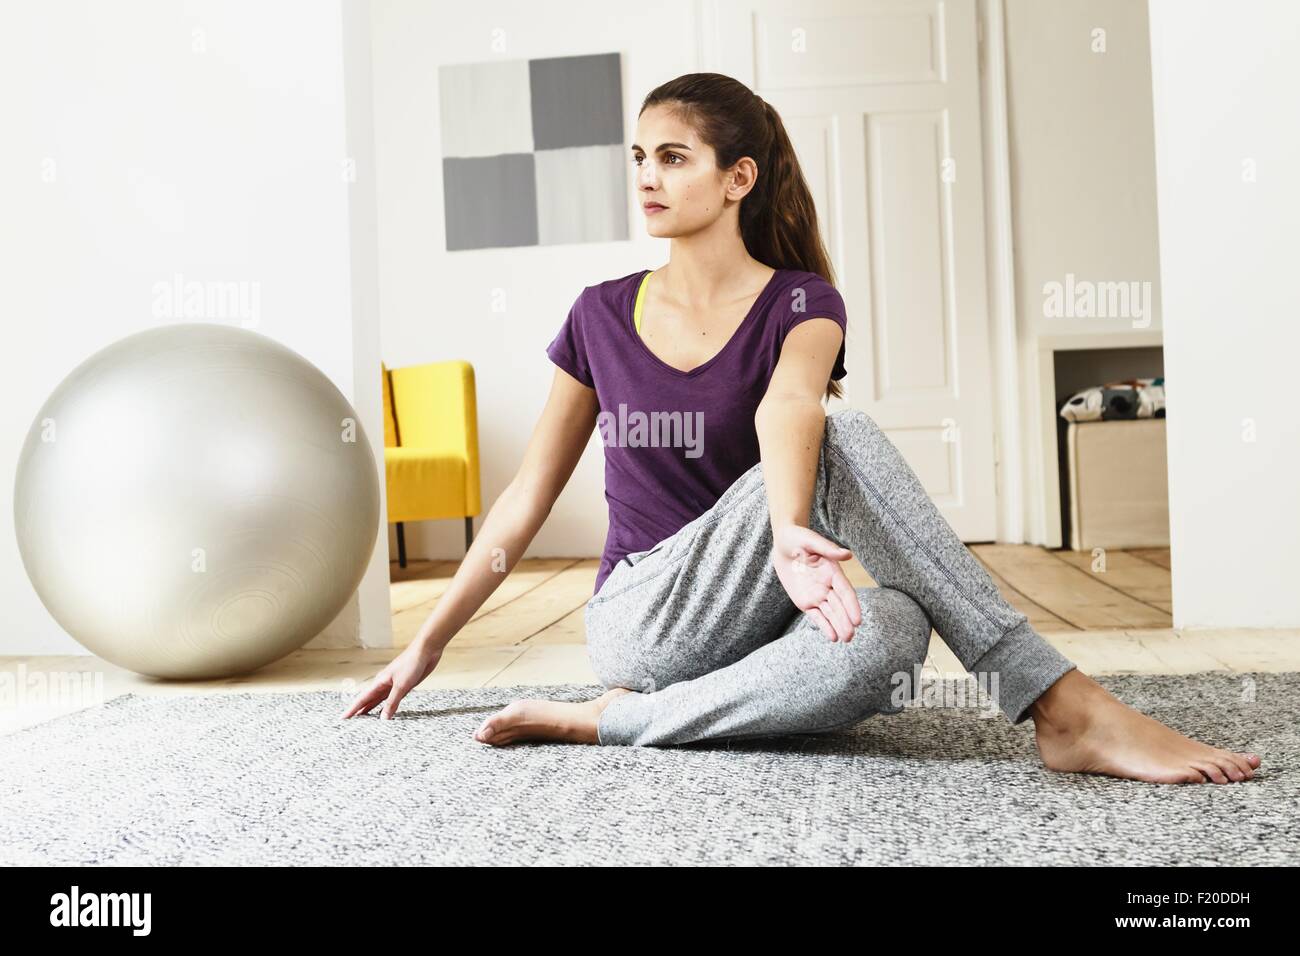 Junge Frau praktizieren Yoga am Boden des Wohnzimmers Stockfoto